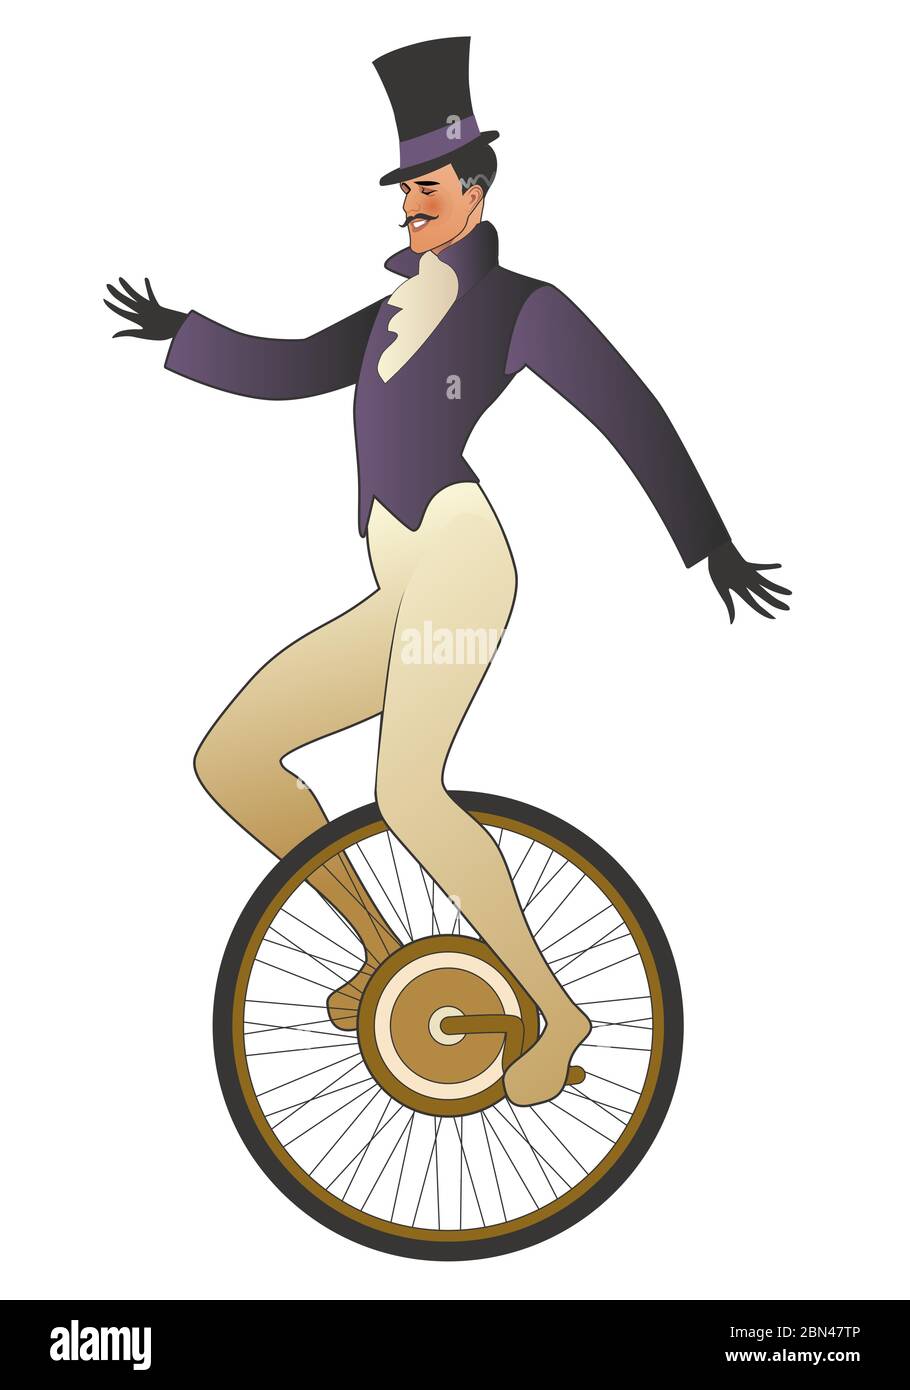 Marcheur sur corde raide moustaché habillé dans l'ancienne mode, portant le chapeau, l'équilibre sur monocycle, isolé sur fond blanc Illustration de Vecteur